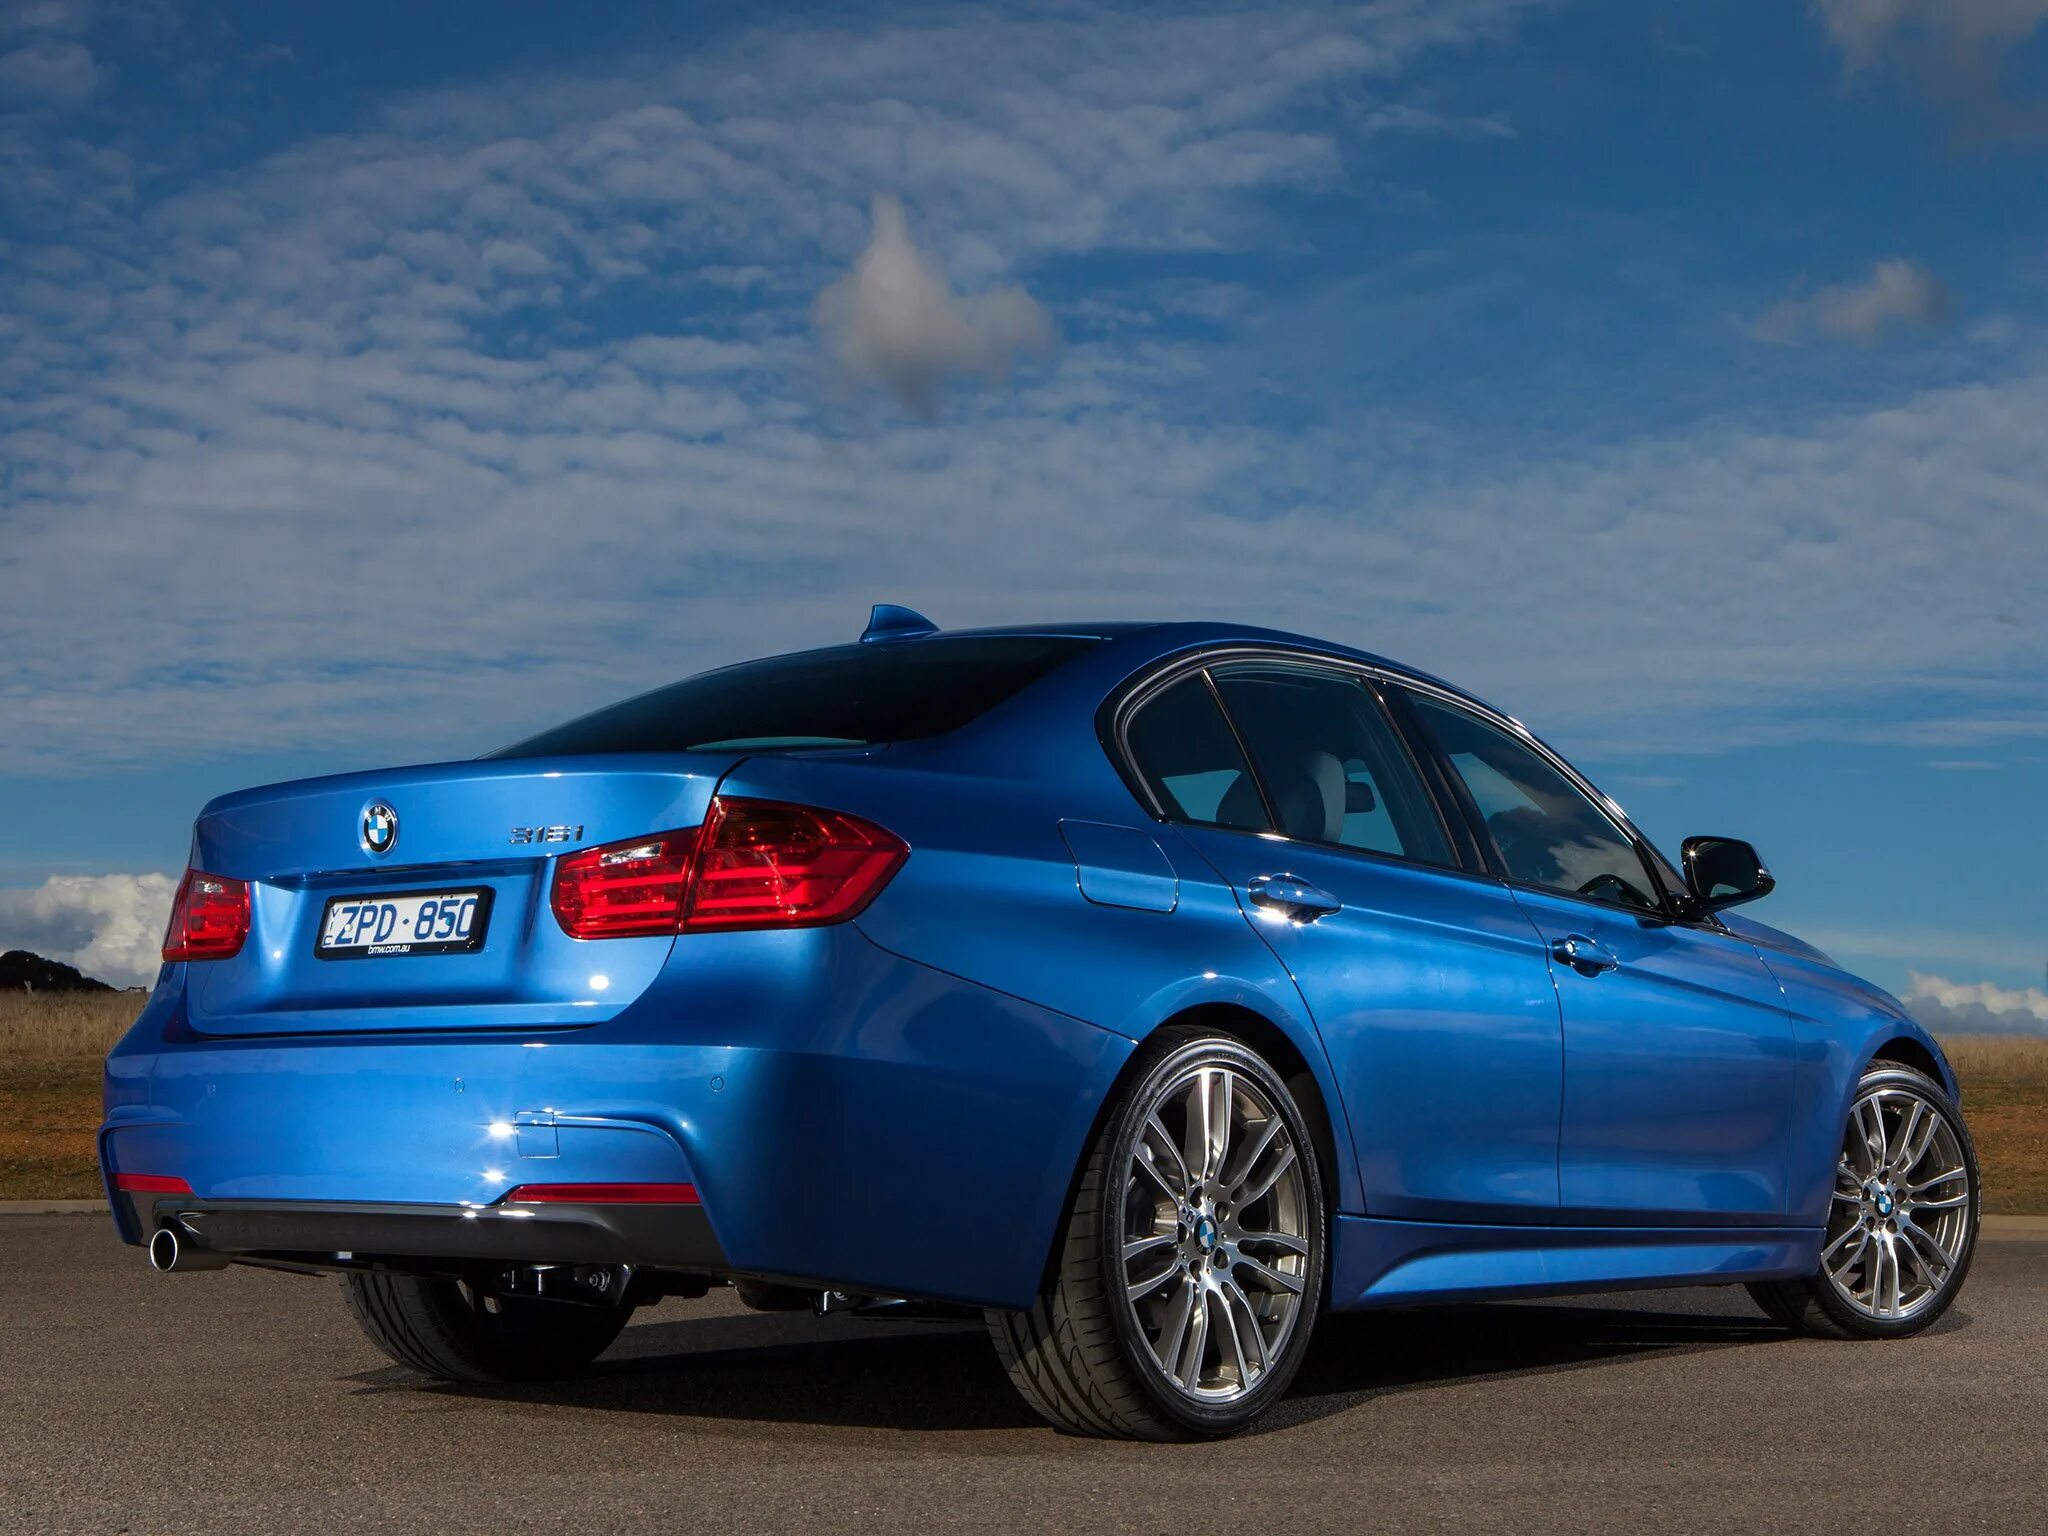 Https m sport. БМВ f30. BMW m3 f30. БМВ f30 2013. БМВ f30 синяя.